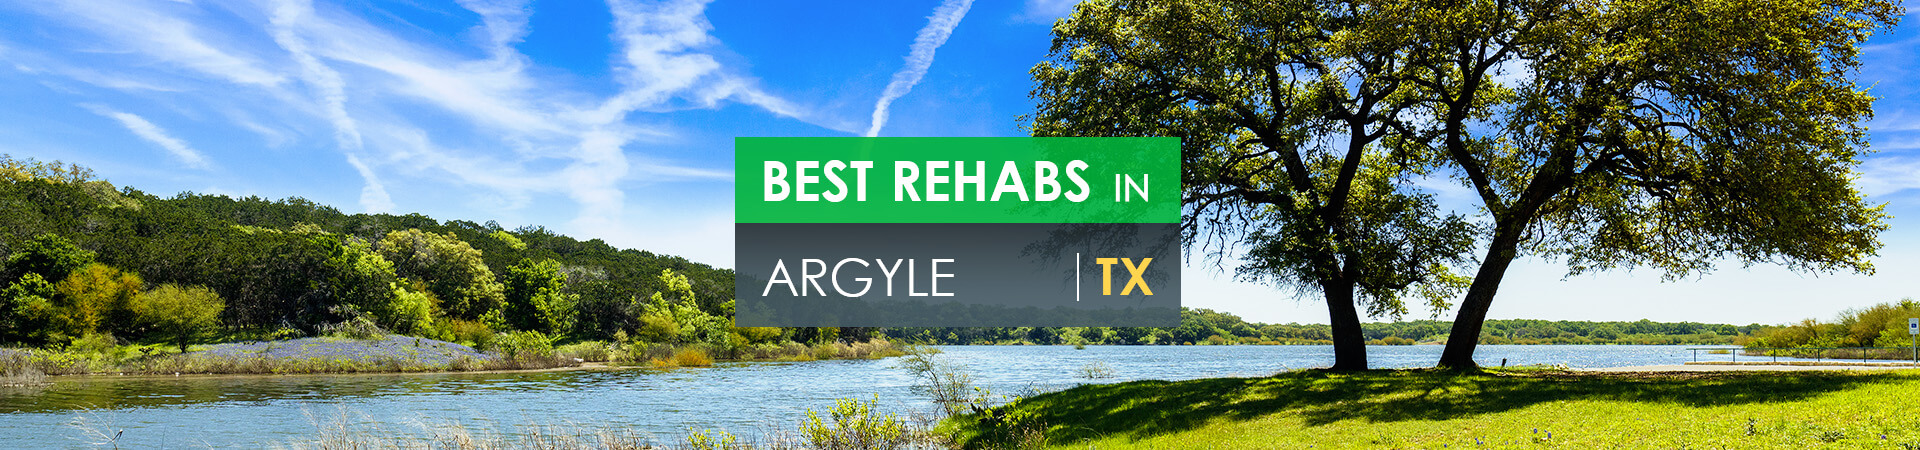 Best rehabs in Argyle, TX